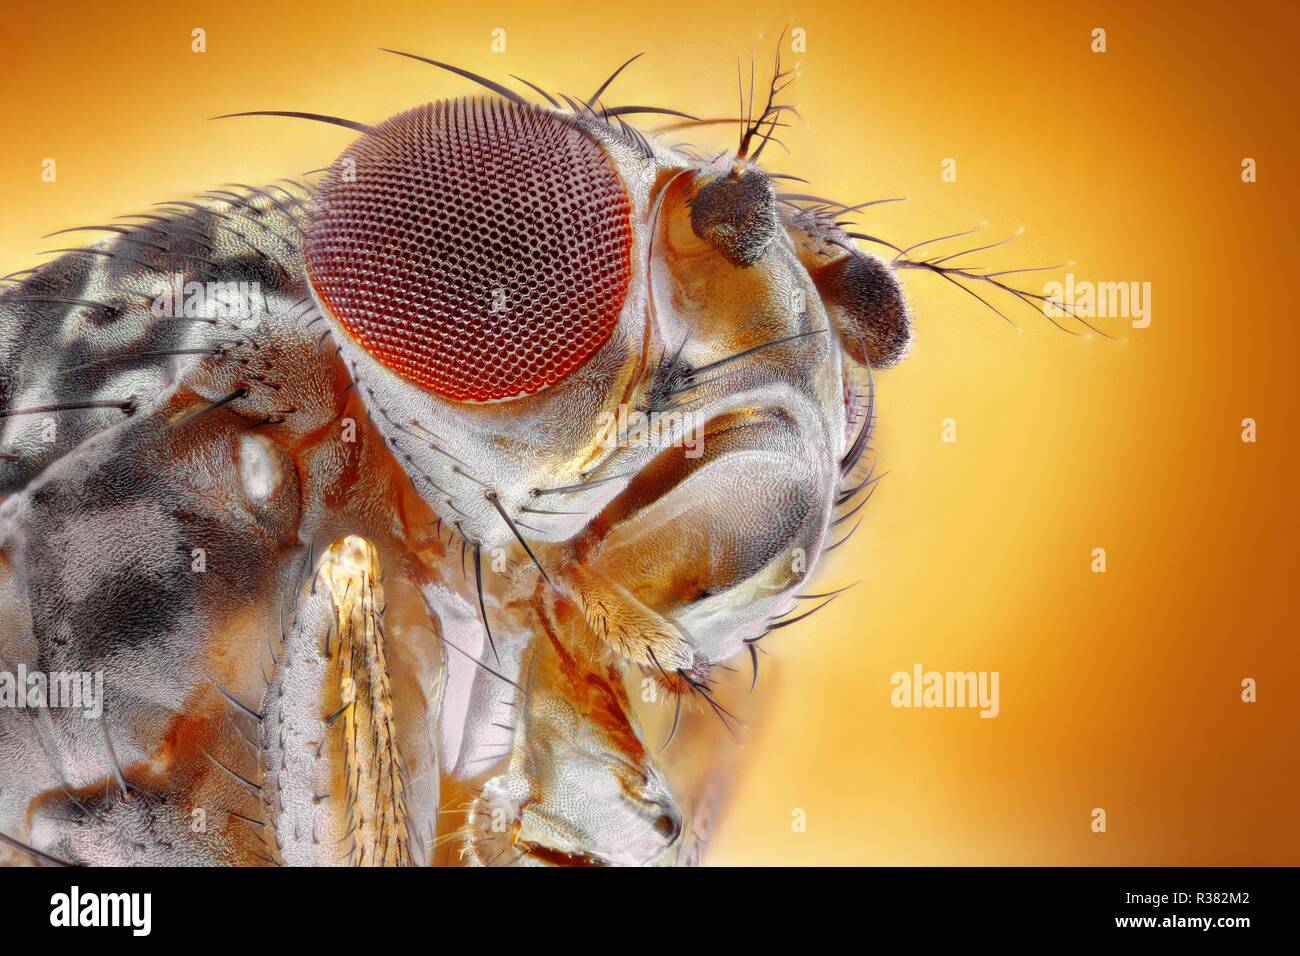 Extrem scharfes und detailliertes Bild der Fruchtfliege zu einer extremen  Vergrößerung mit einem Mikroskop Ziel genommen Stockfotografie - Alamy